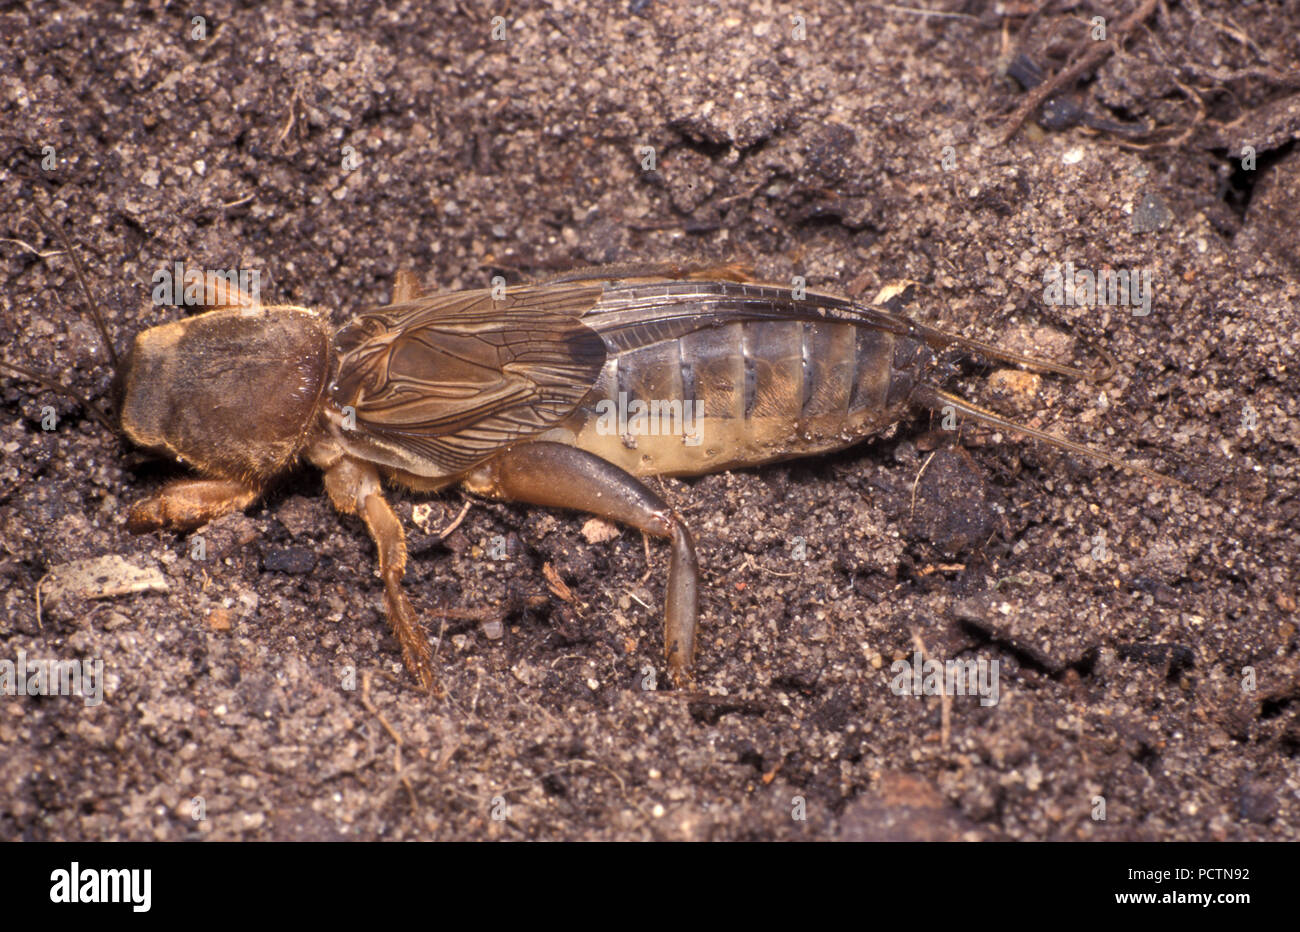 Mole grilli sono membri della famiglia di insetti Gryllotalpidae, nell'ordine Orthoptera (cavallette, locuste e grilli) Foto Stock